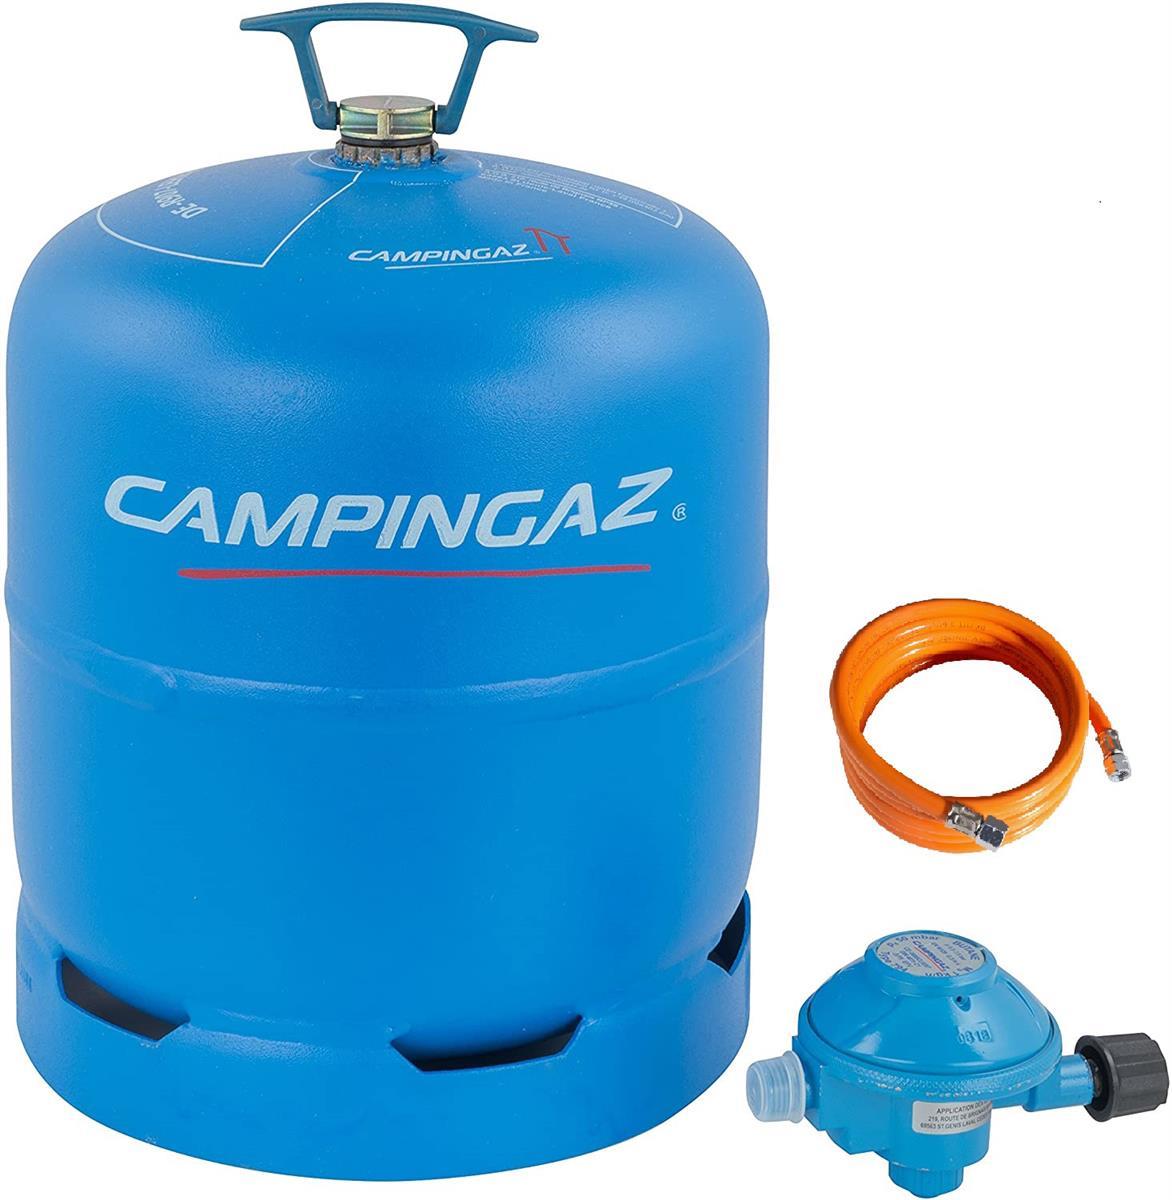 Campingaz R 907 Gasflasche - 2,75 kg Butangas mit 0,8 m Schlauch und 50 mBar Regler im Set